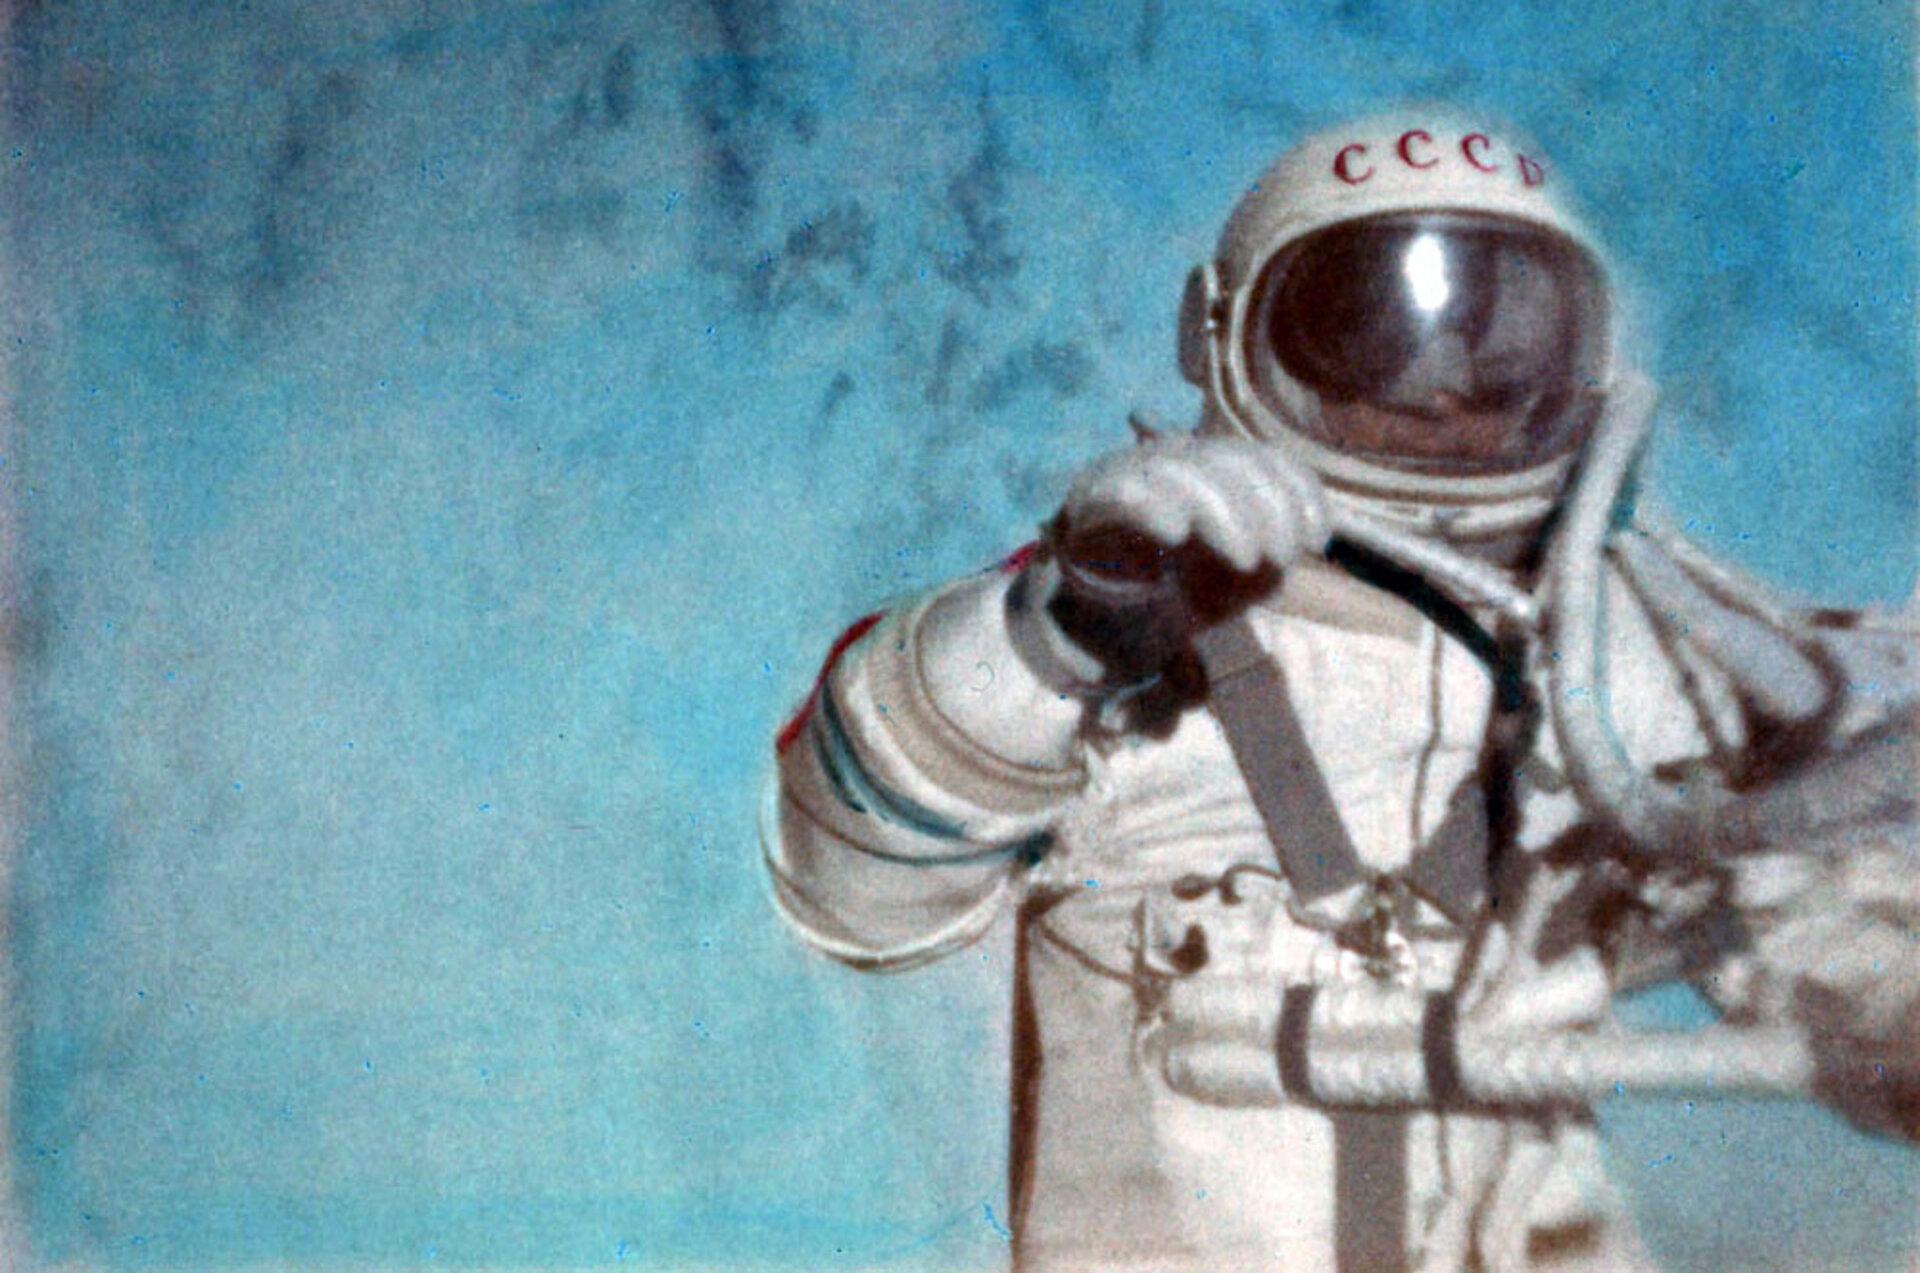 Дата первого выхода в открытый космос